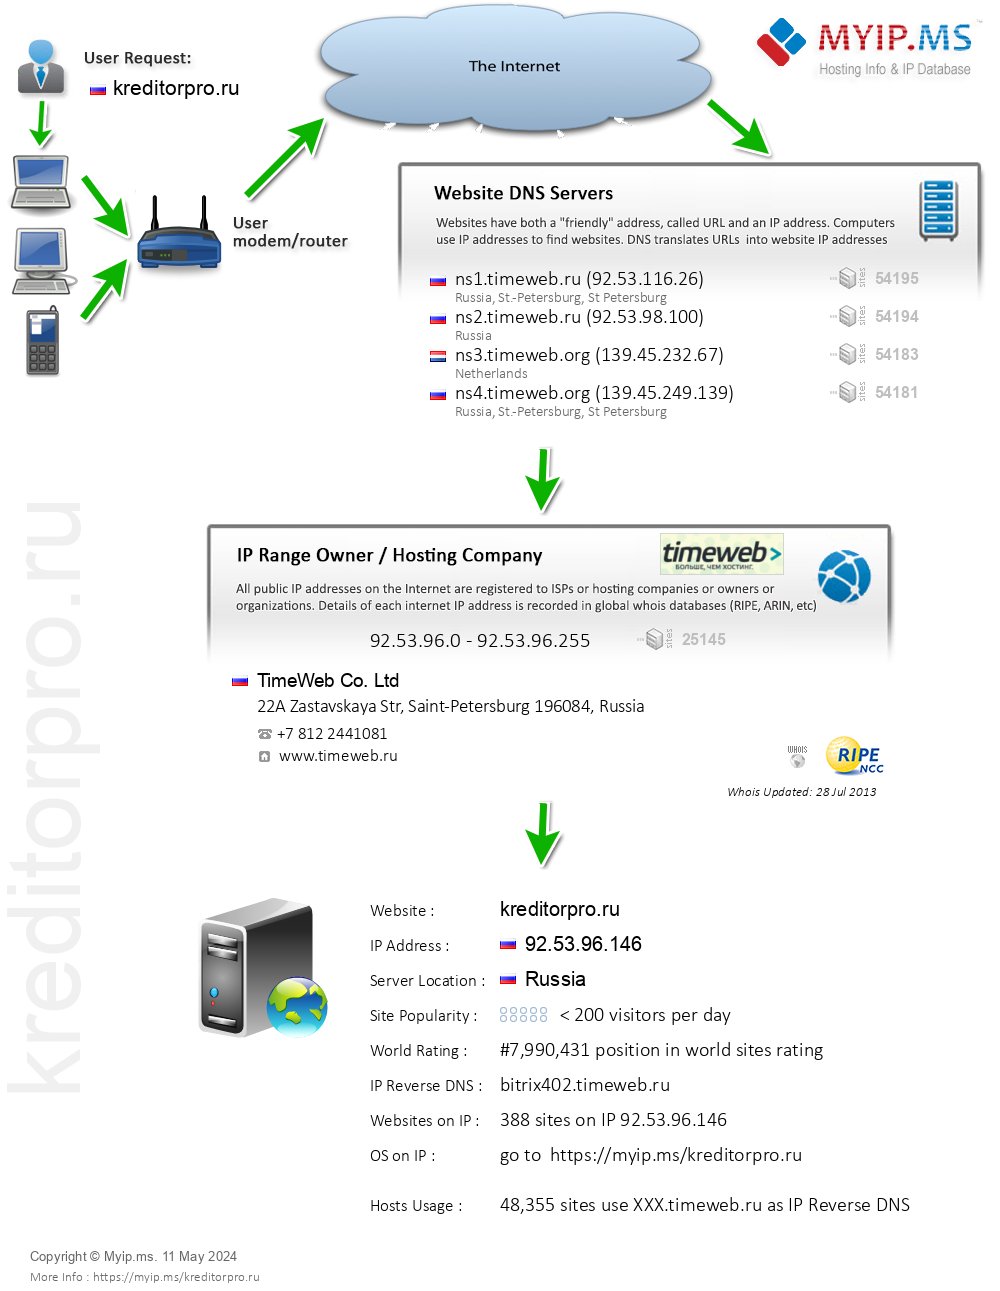 Kreditorpro.ru - Website Hosting Visual IP Diagram